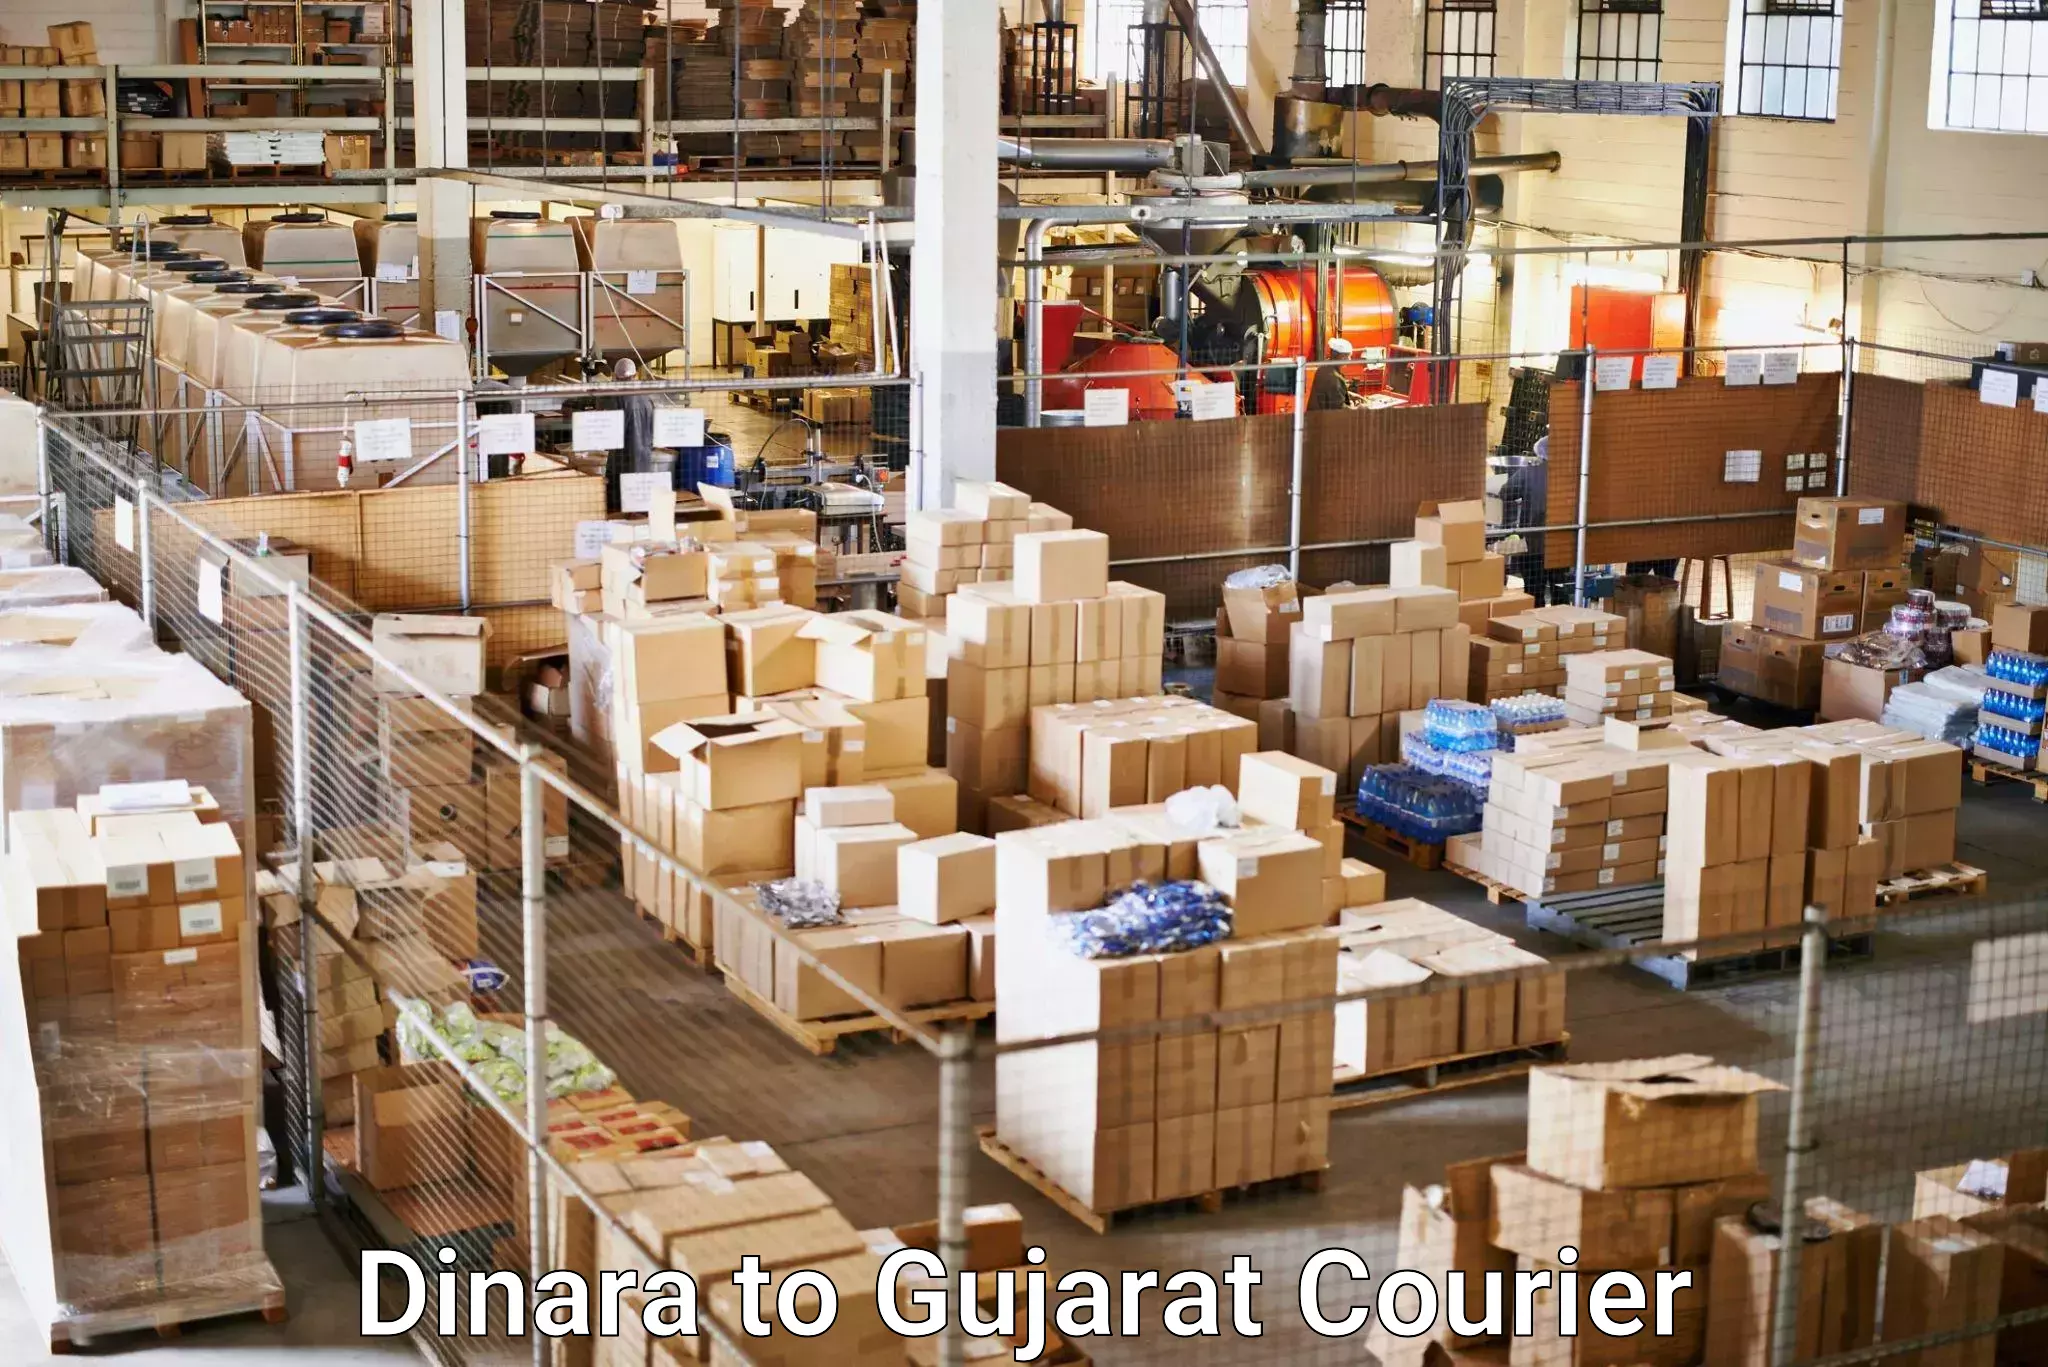 International courier rates Dinara to Gujarat